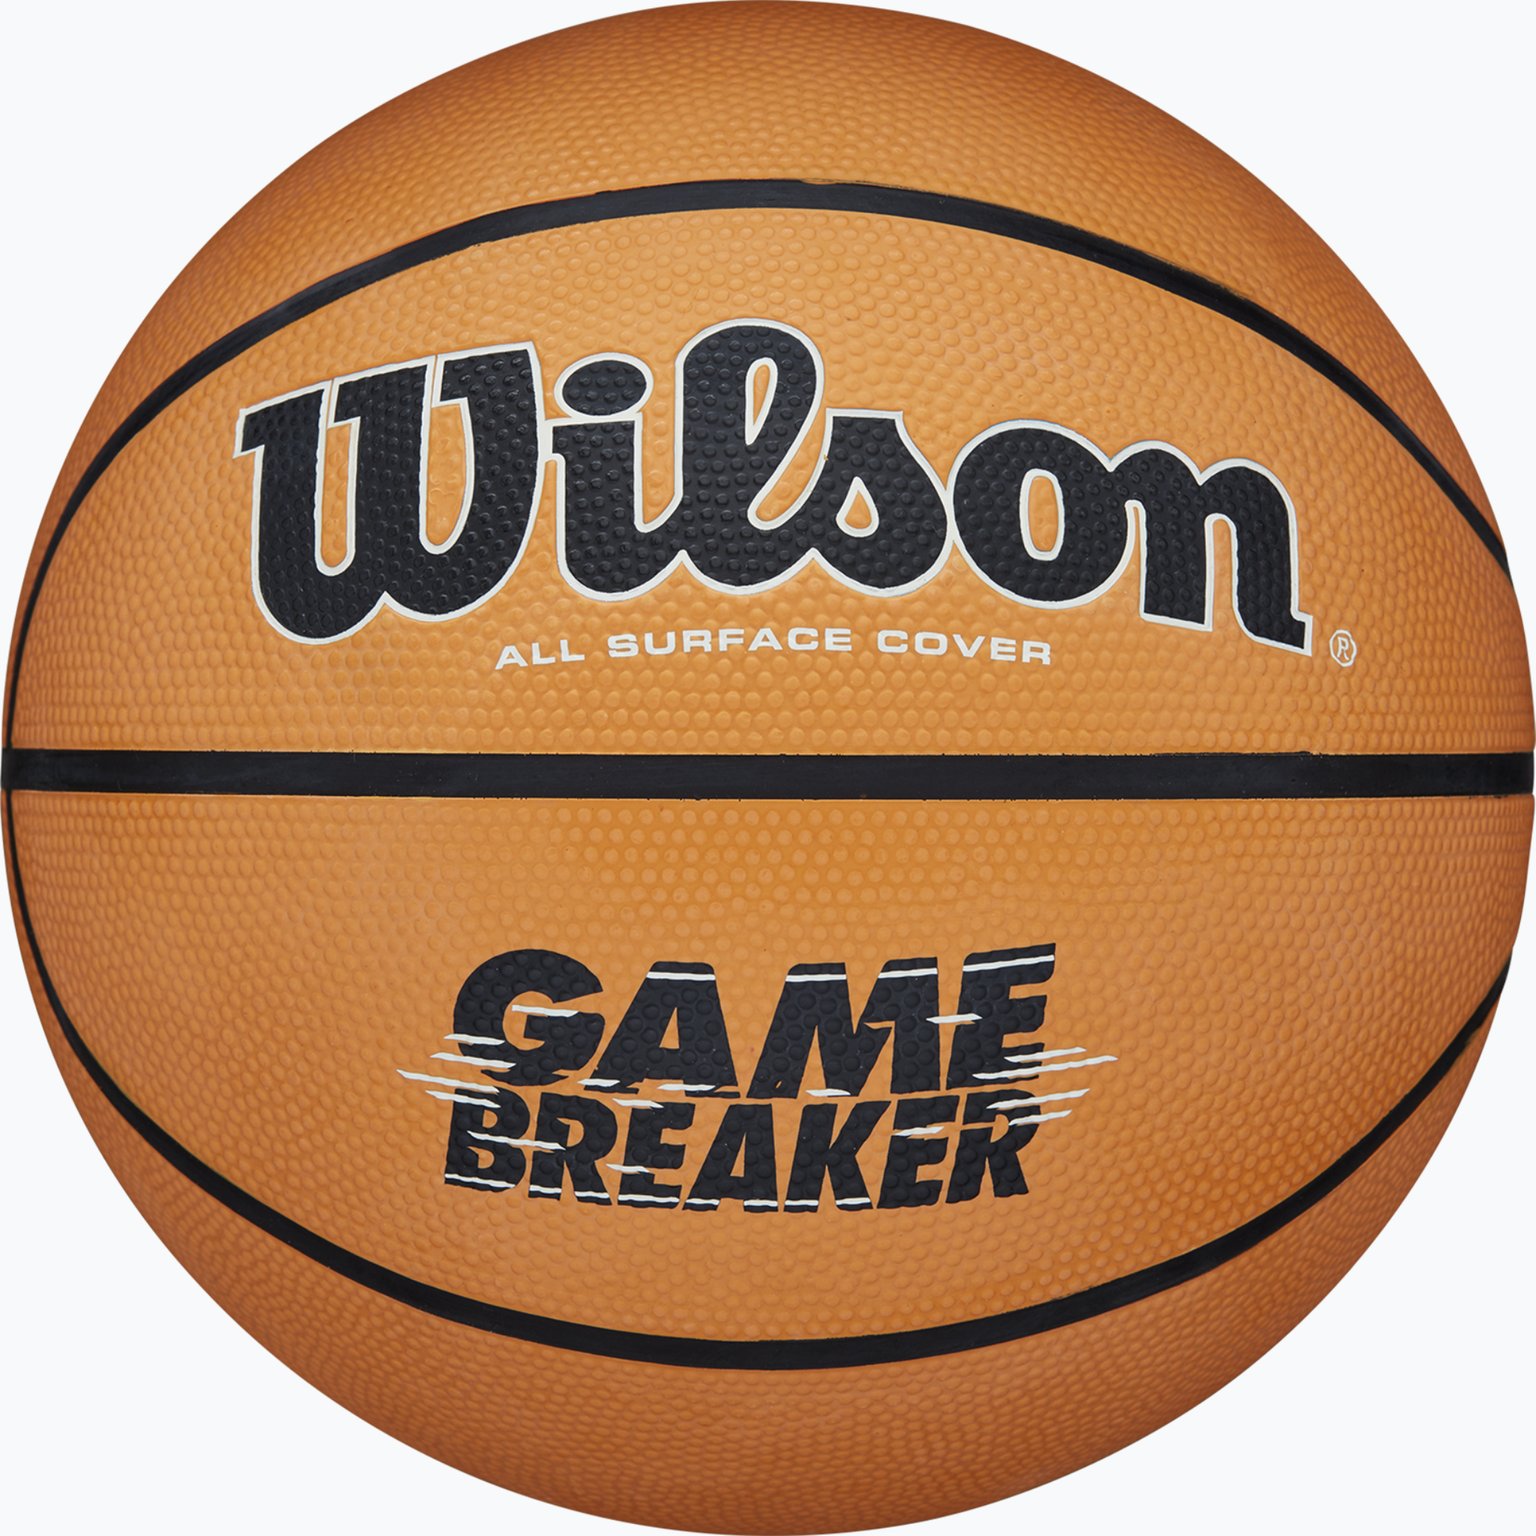 Gamebreaker basketboll